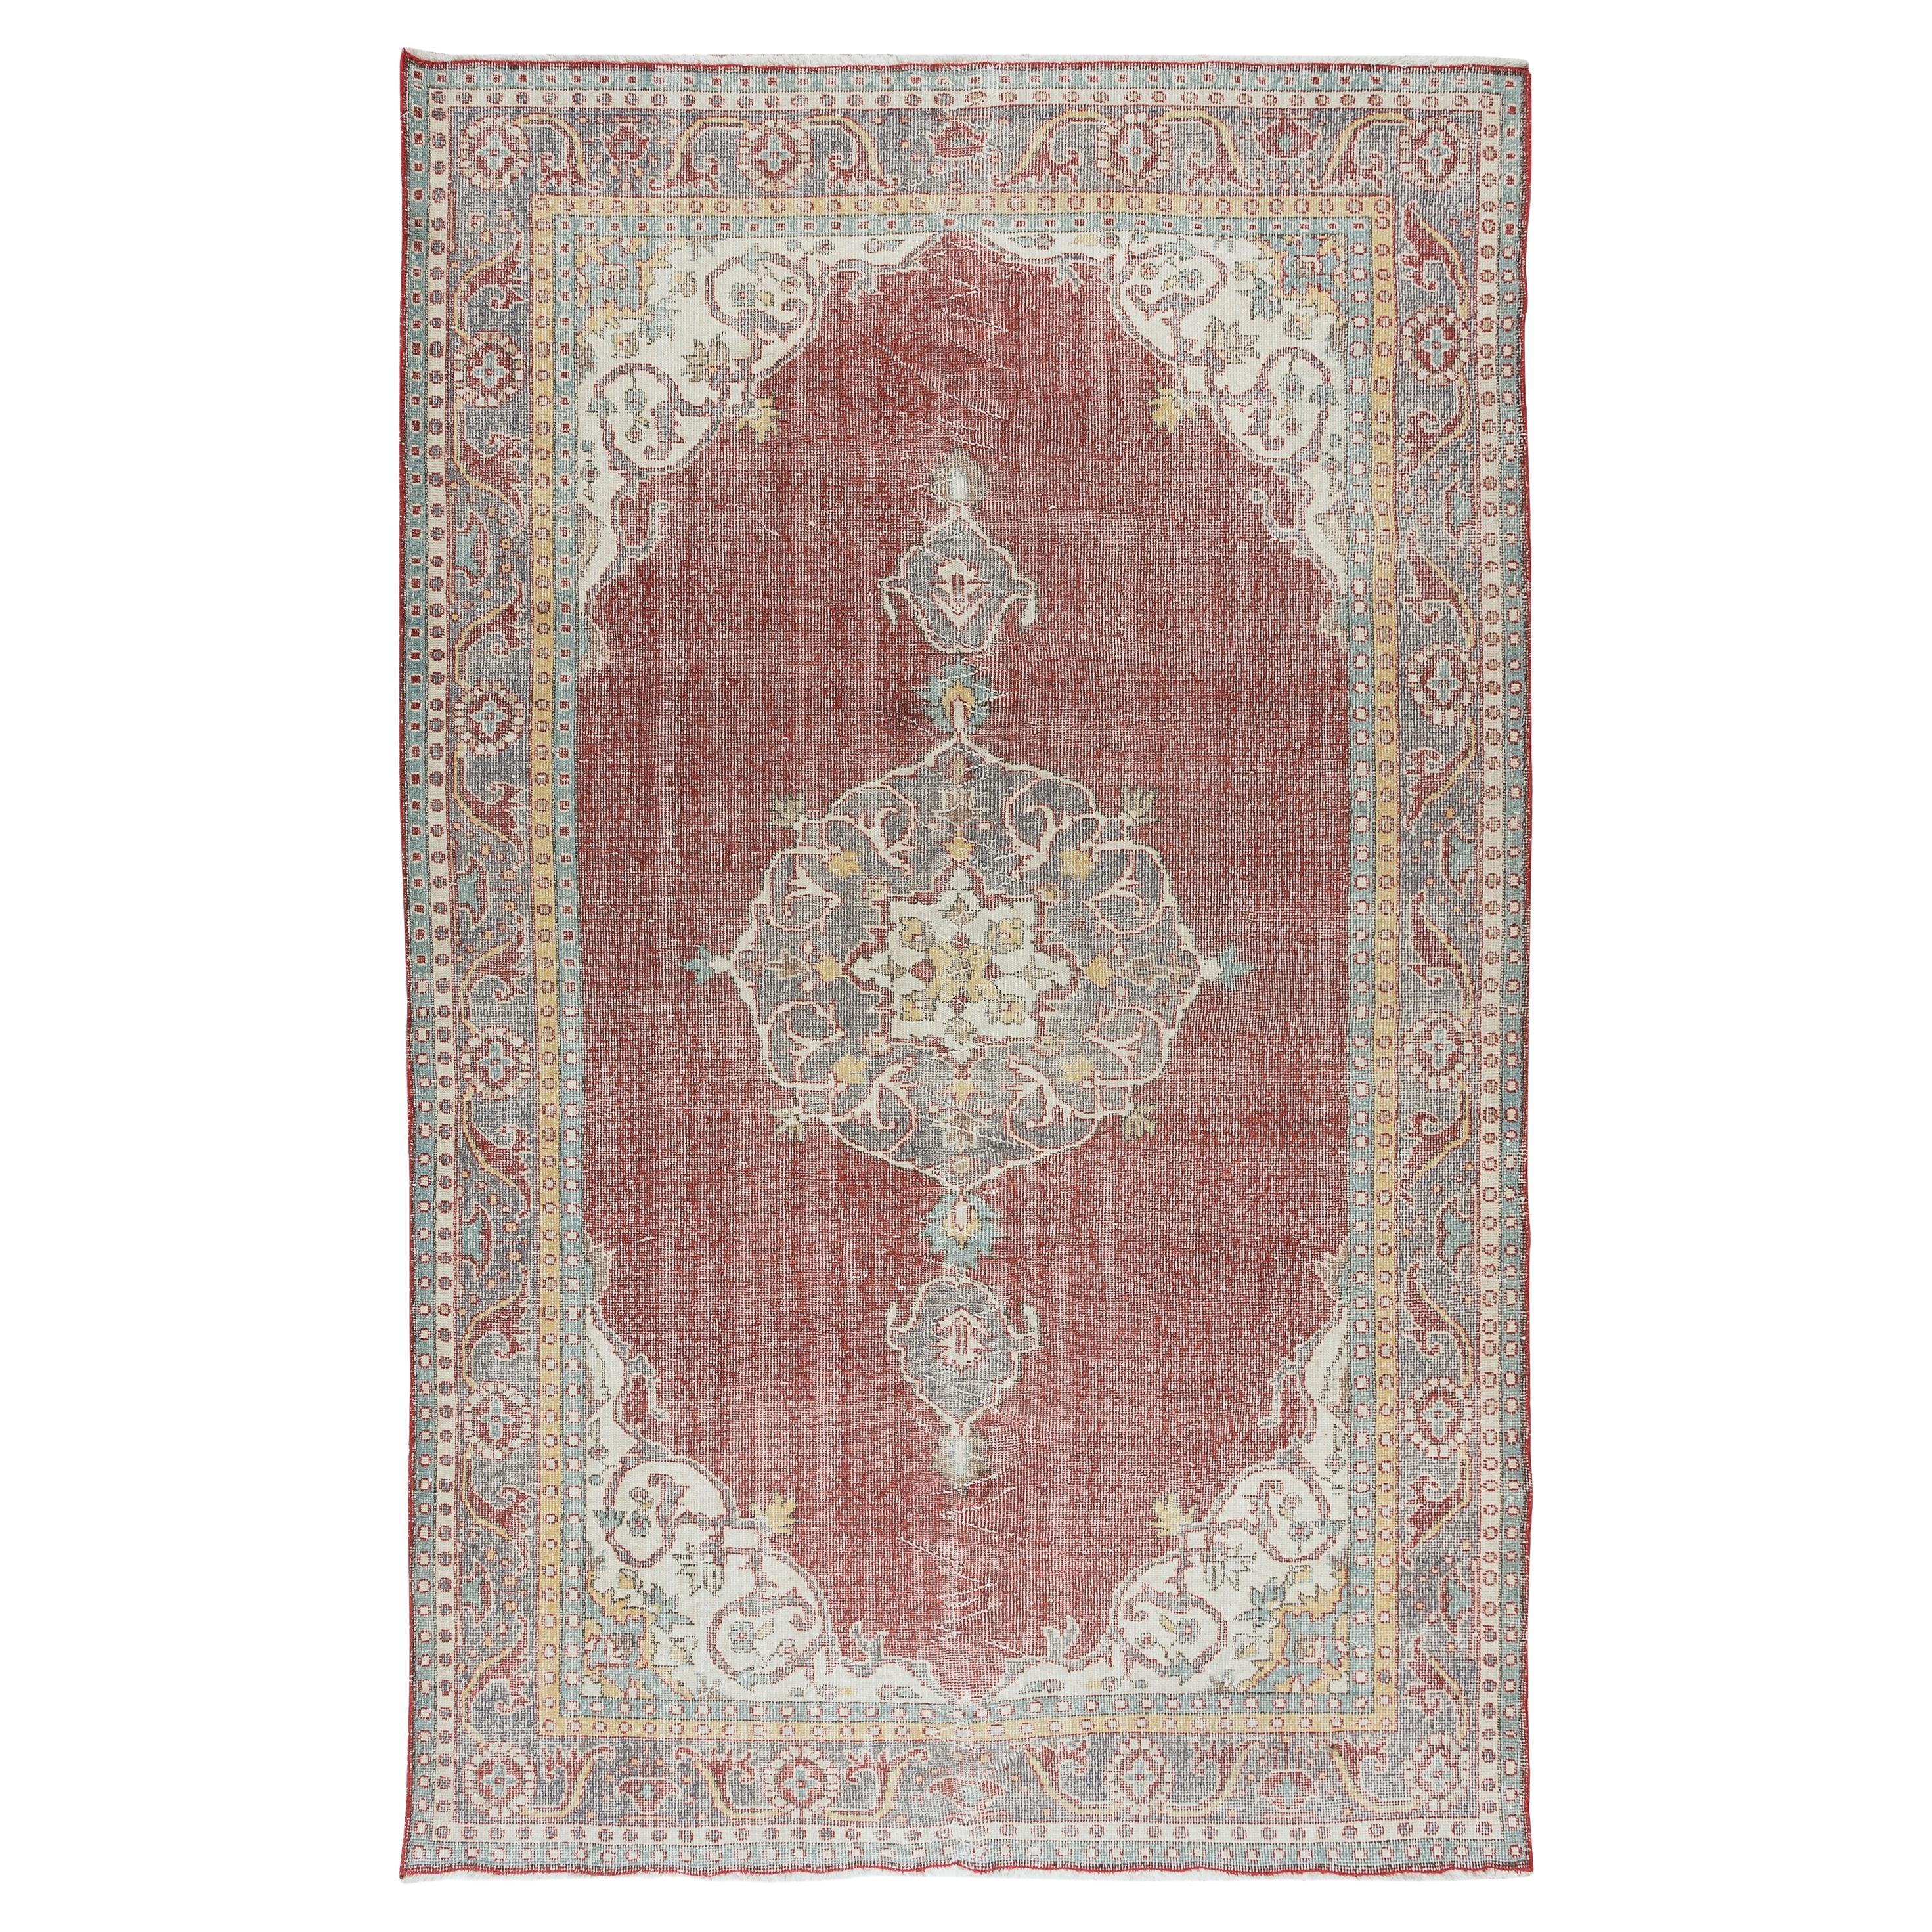 5.9x9.6 Ft Handgeknüpfter türkischer Vintage-Teppich aus Wolle, Medaillon-Design